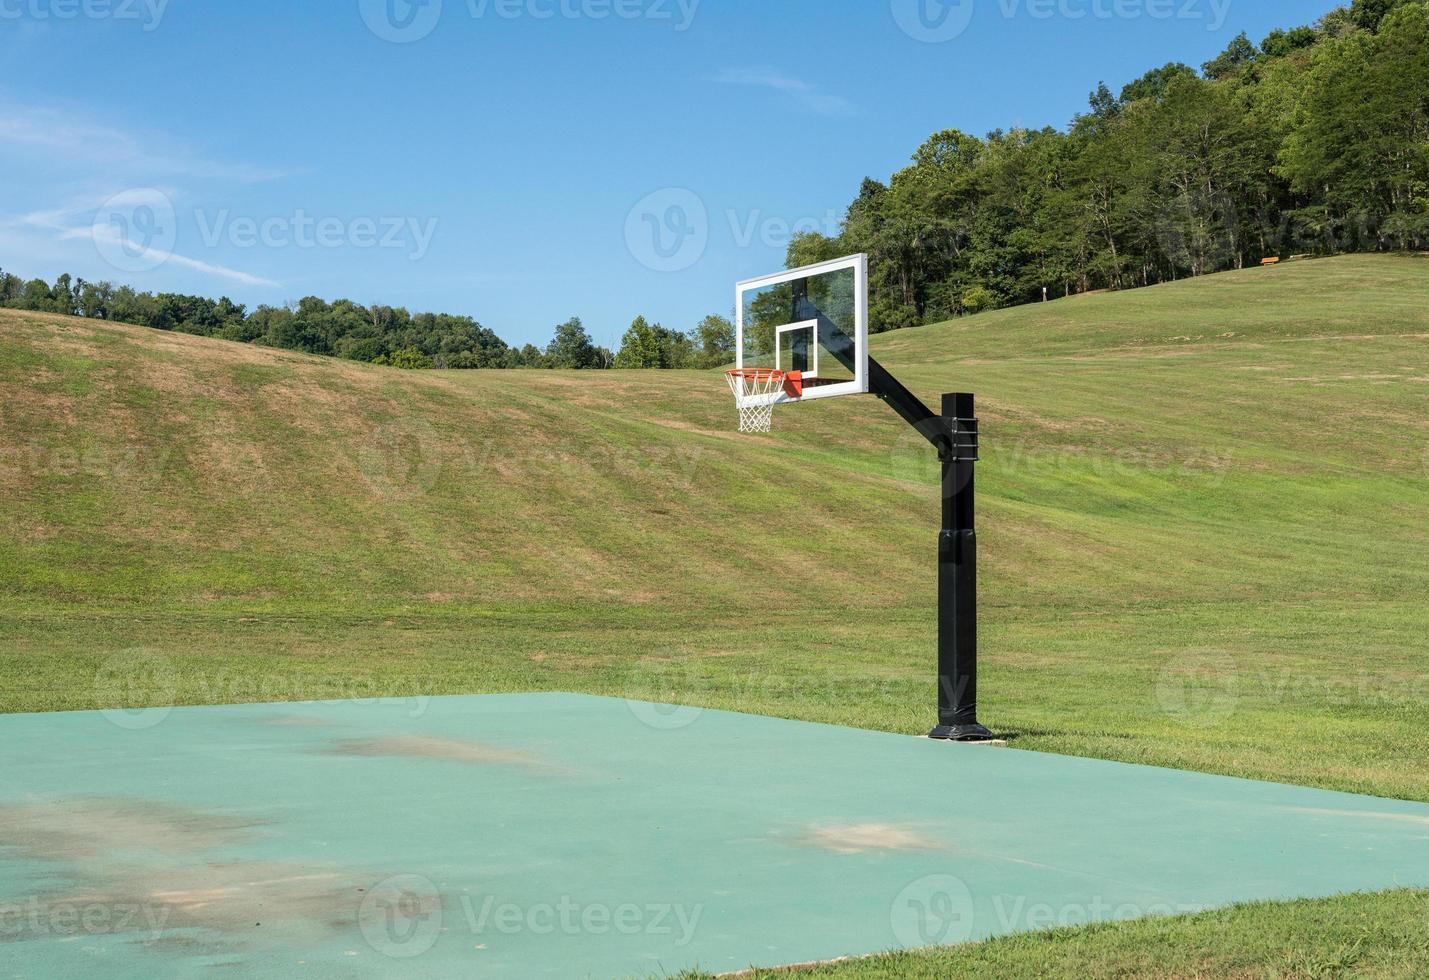 extern sportveld met basketbal- of korfbalnet omgeven door velden foto